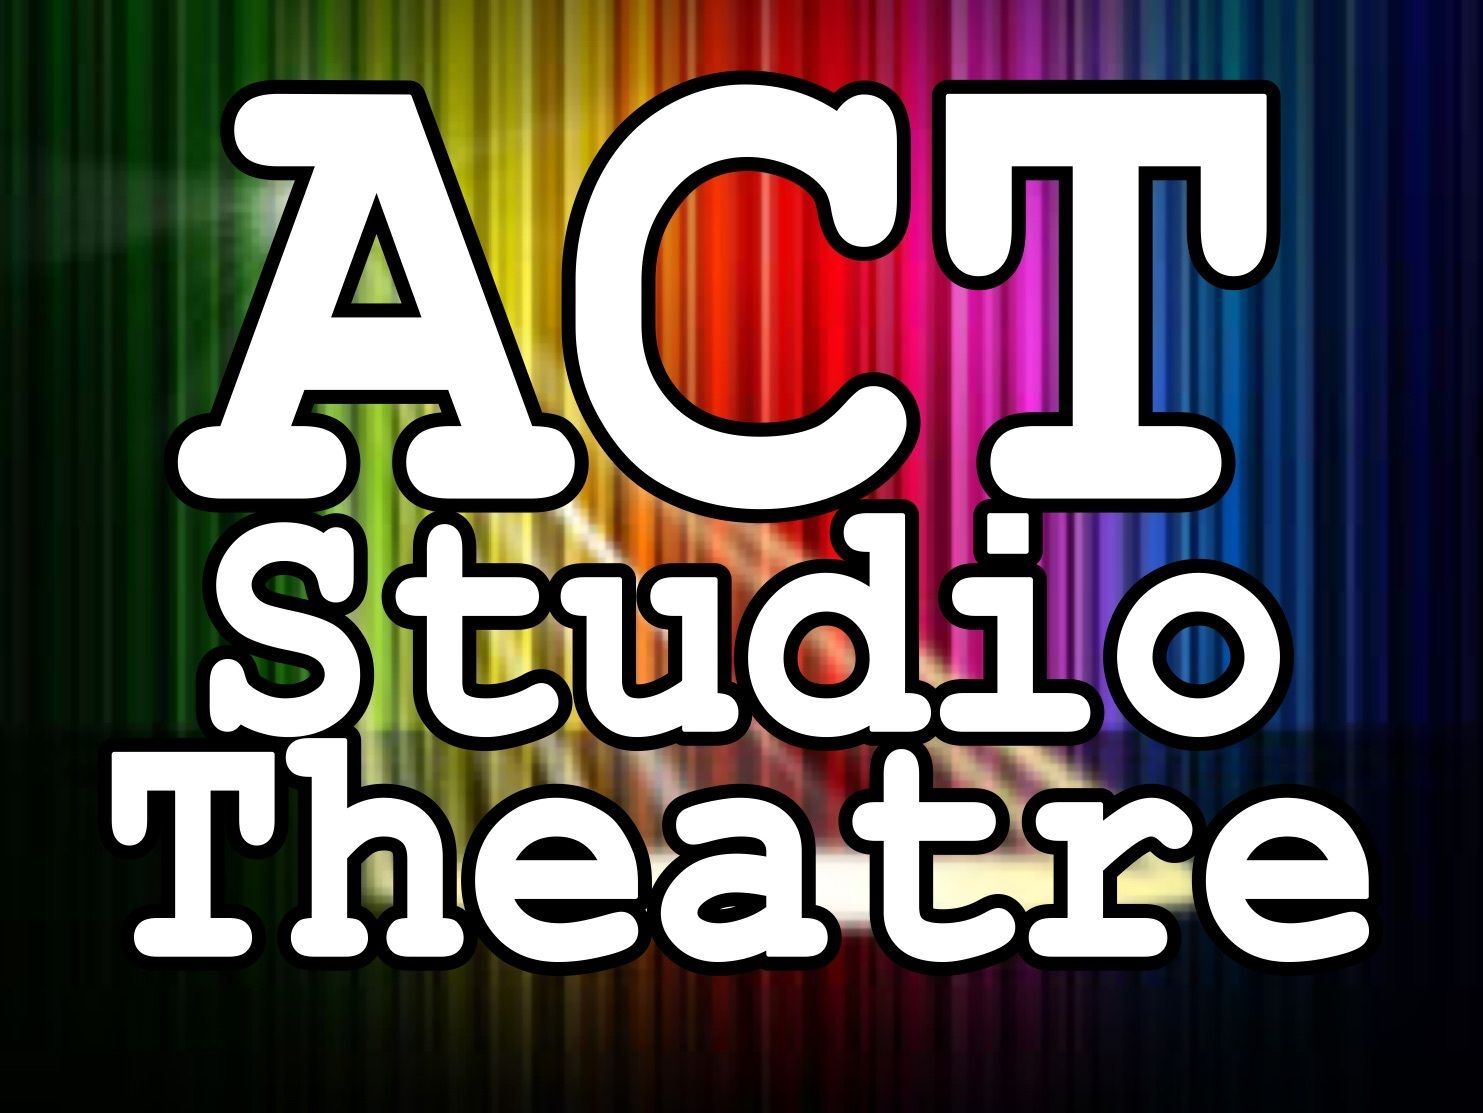 ACT Studio Theatre